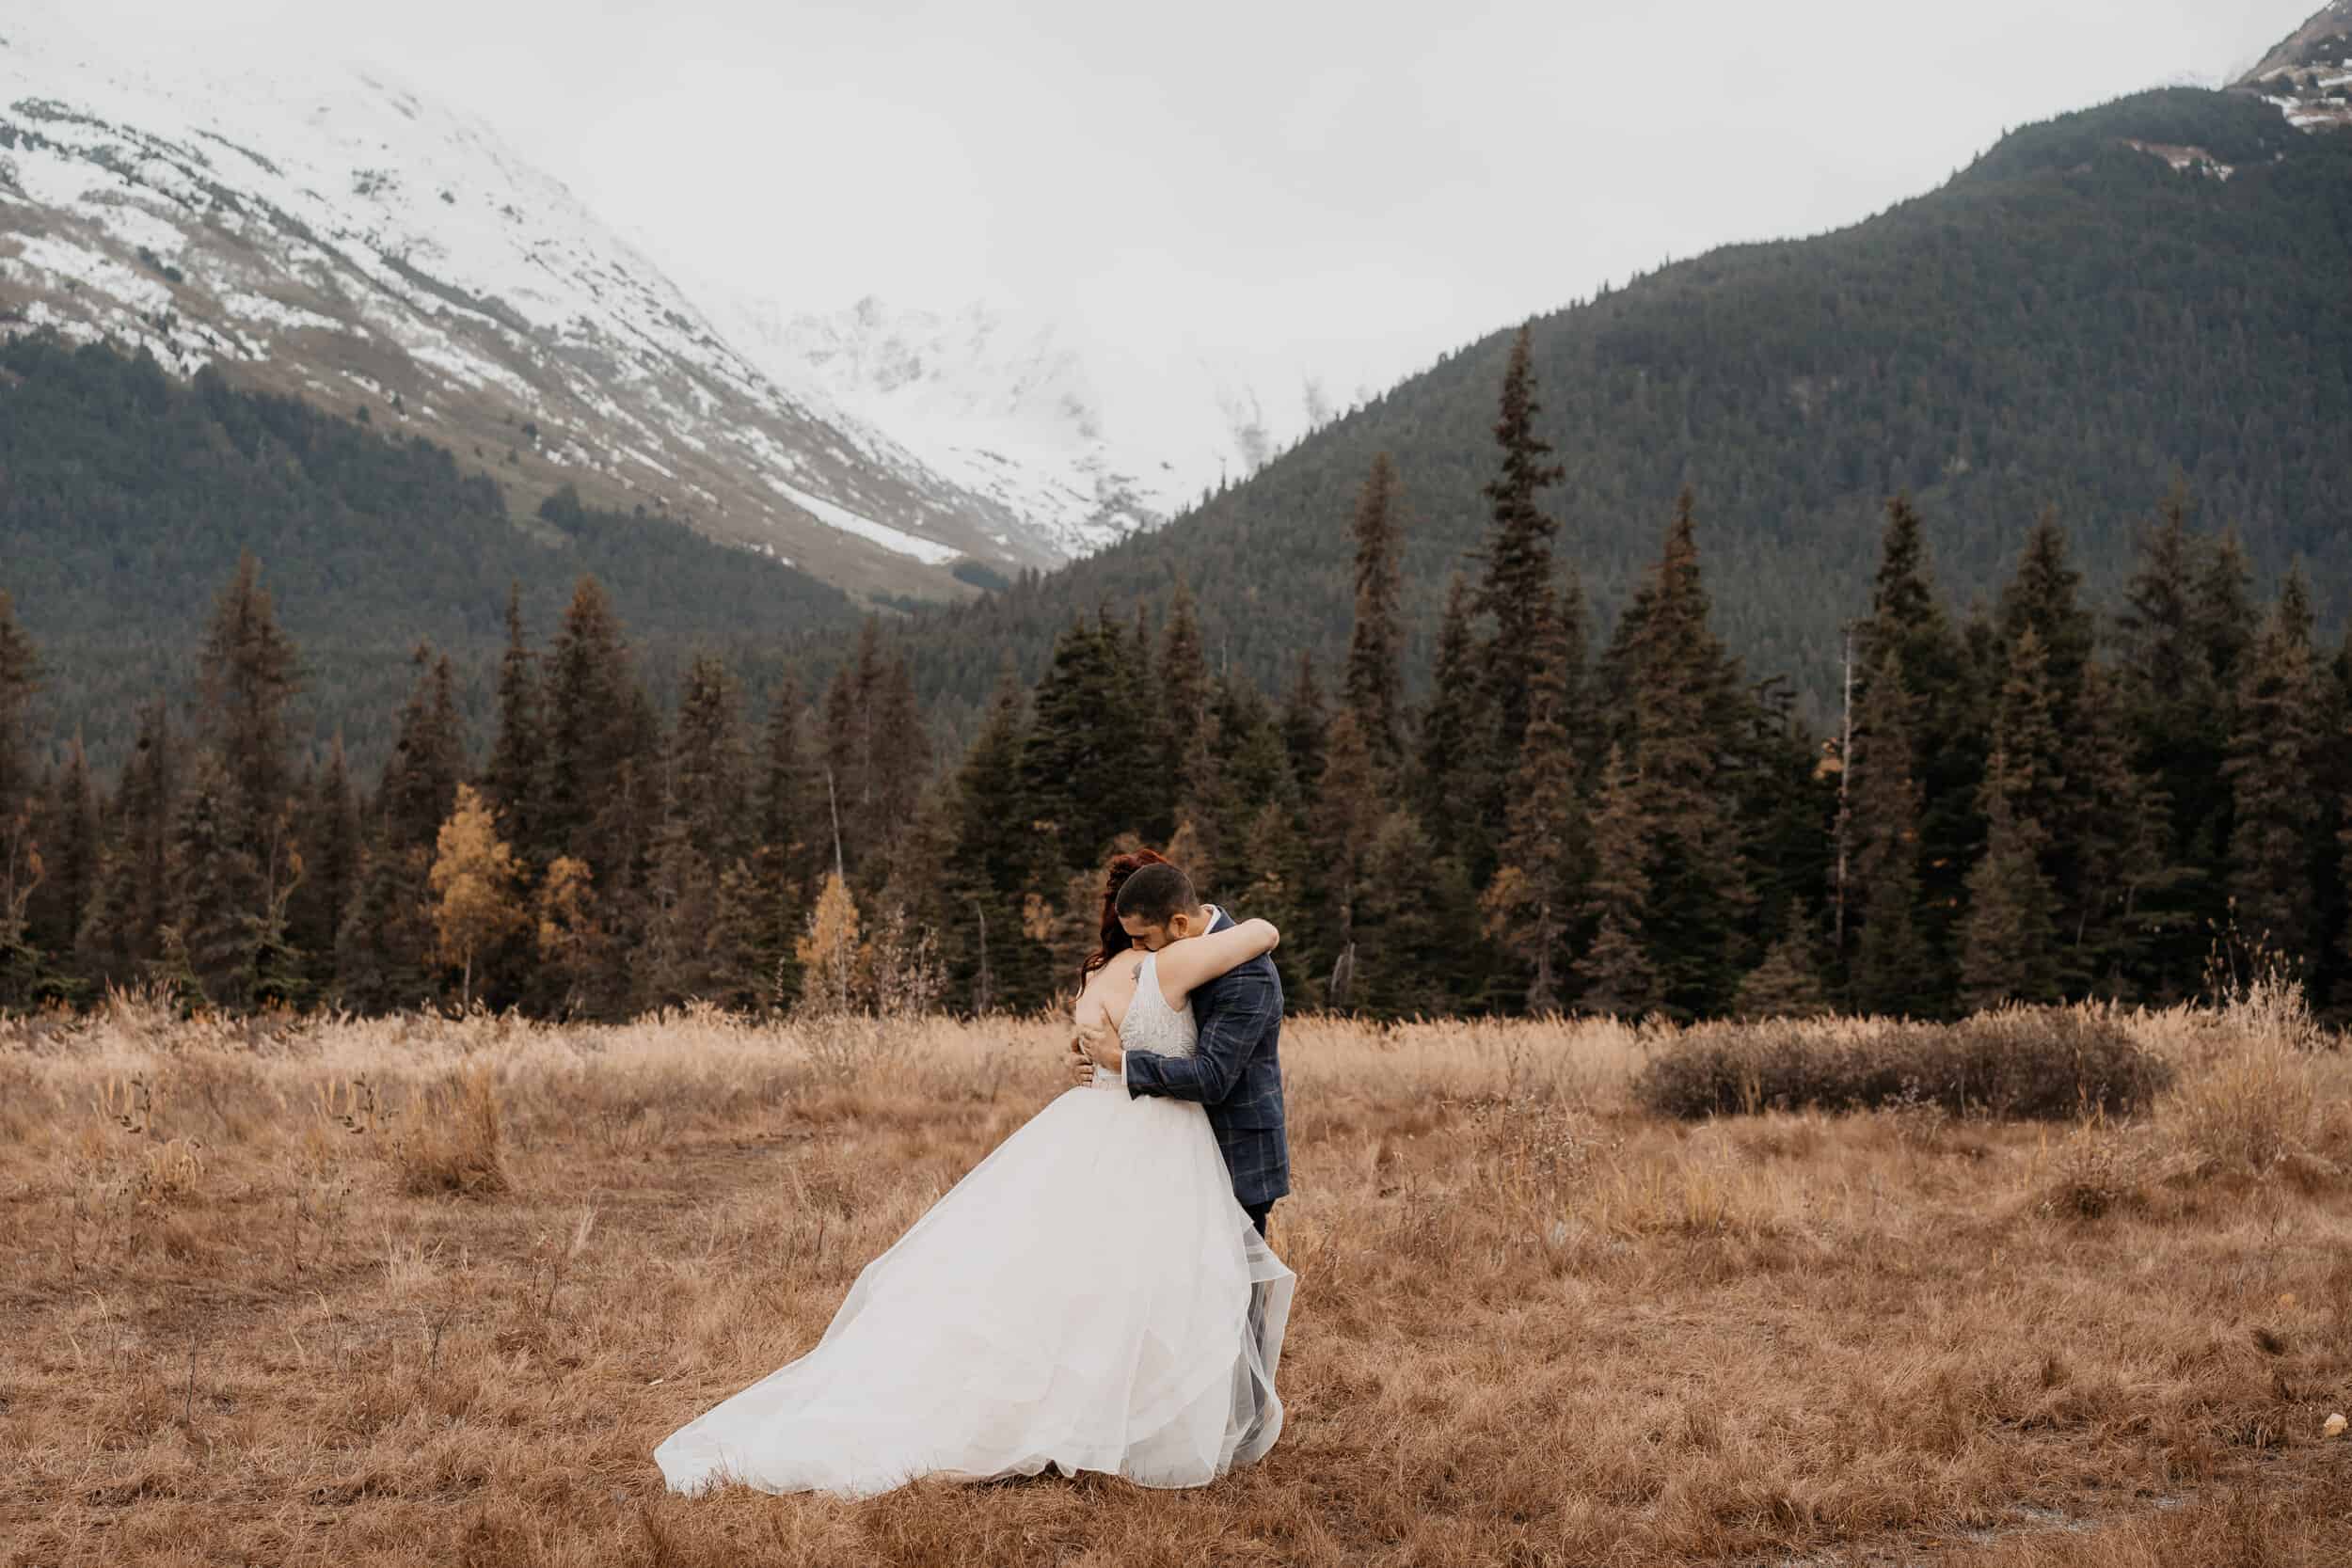 Alaska Mountain wedding venue